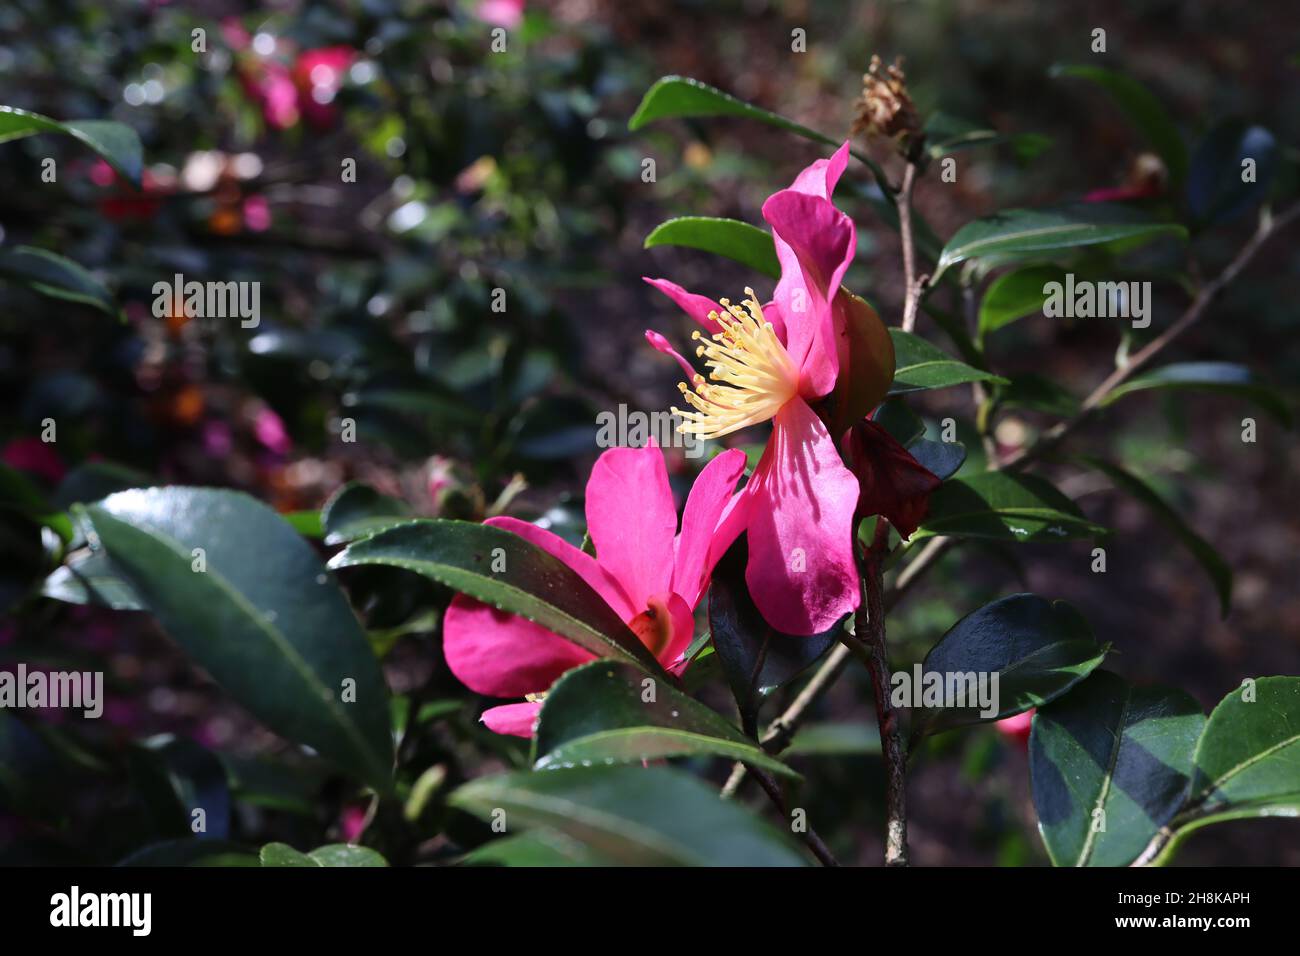 Camellia sasanqua 'Rubra' flores sencillas de color rosa intenso con estambres amarillos cortos y hojas elípticas brillantes de color verde oscuro, noviembre, Inglaterra, Reino Unido Foto de stock